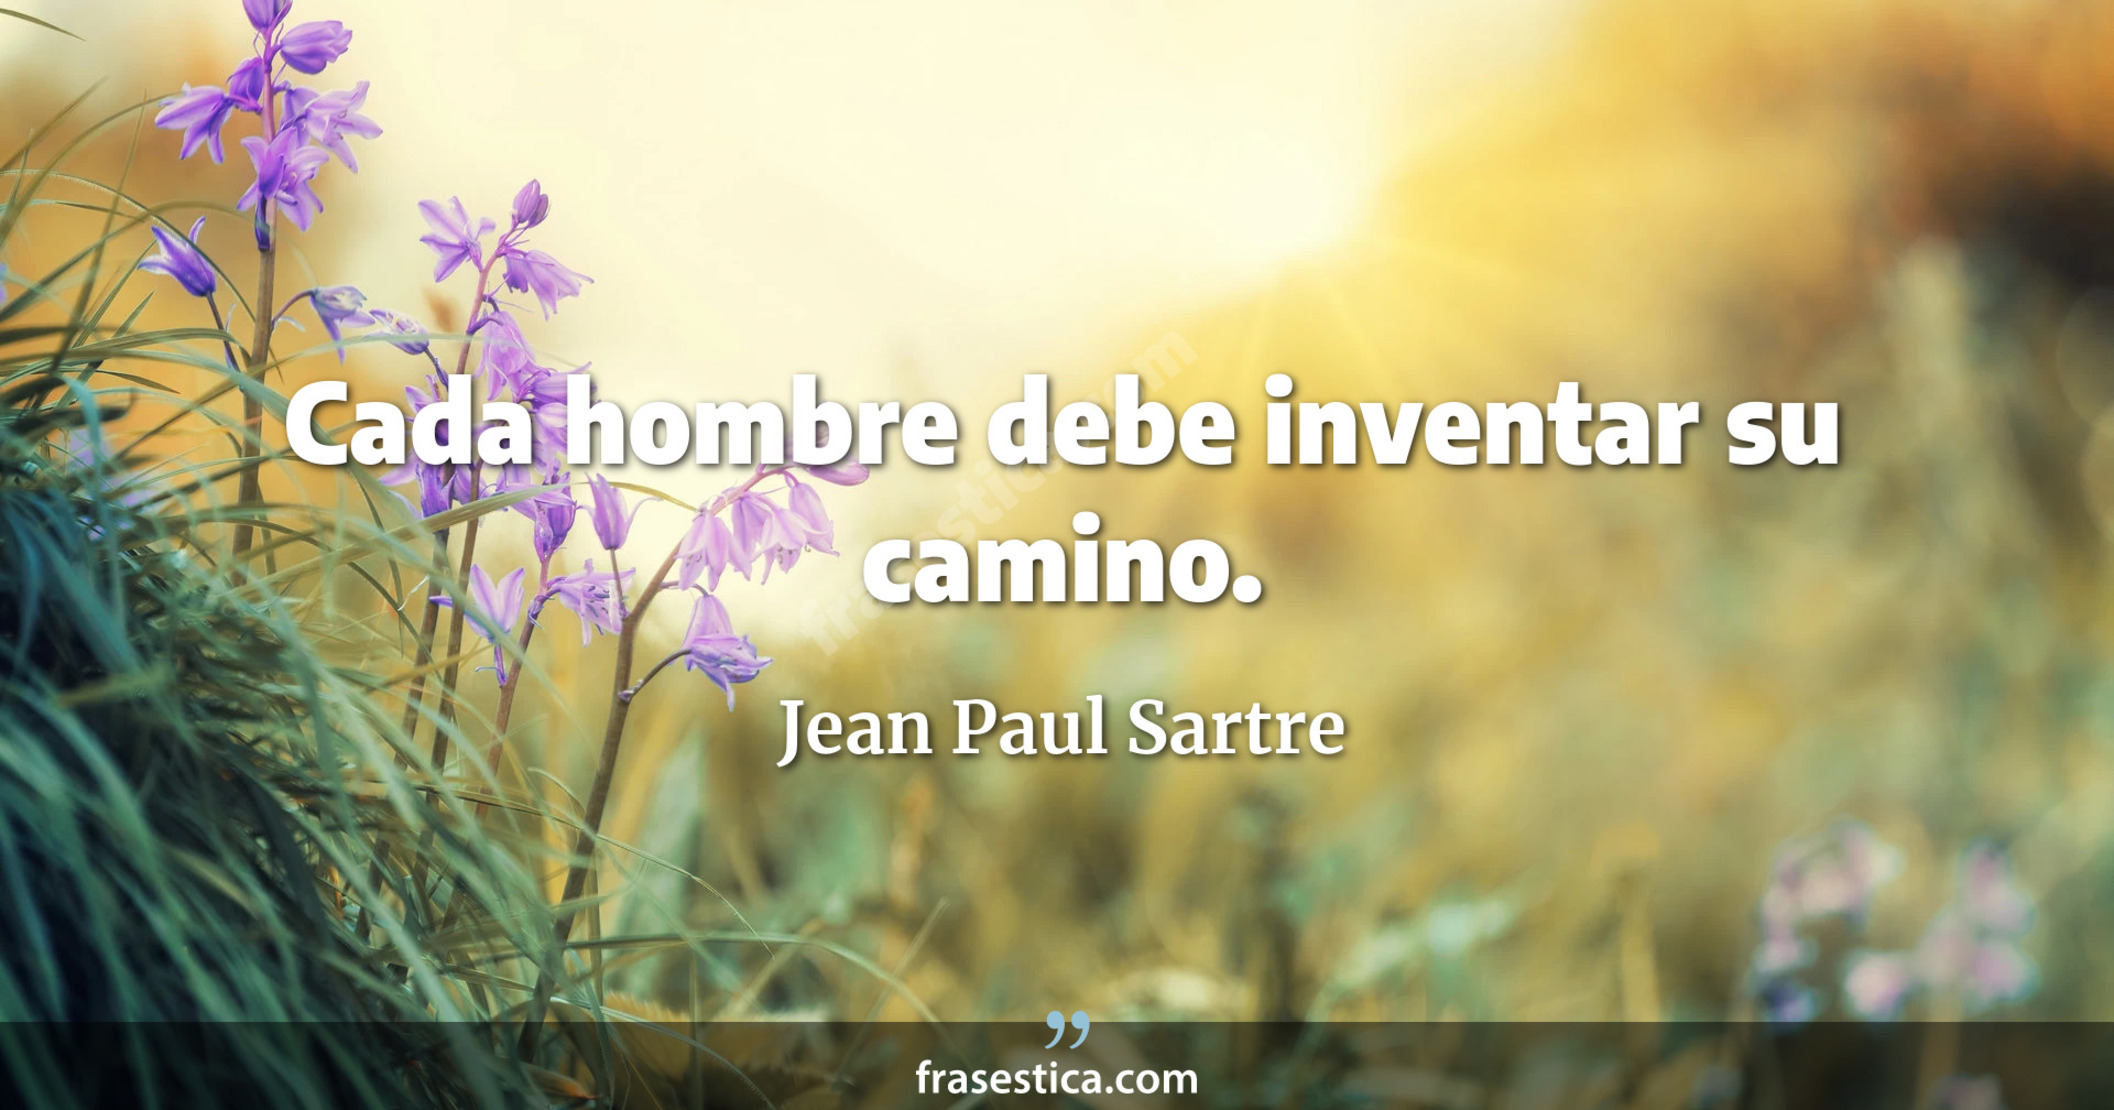 Cada hombre debe inventar su camino. - Jean Paul Sartre